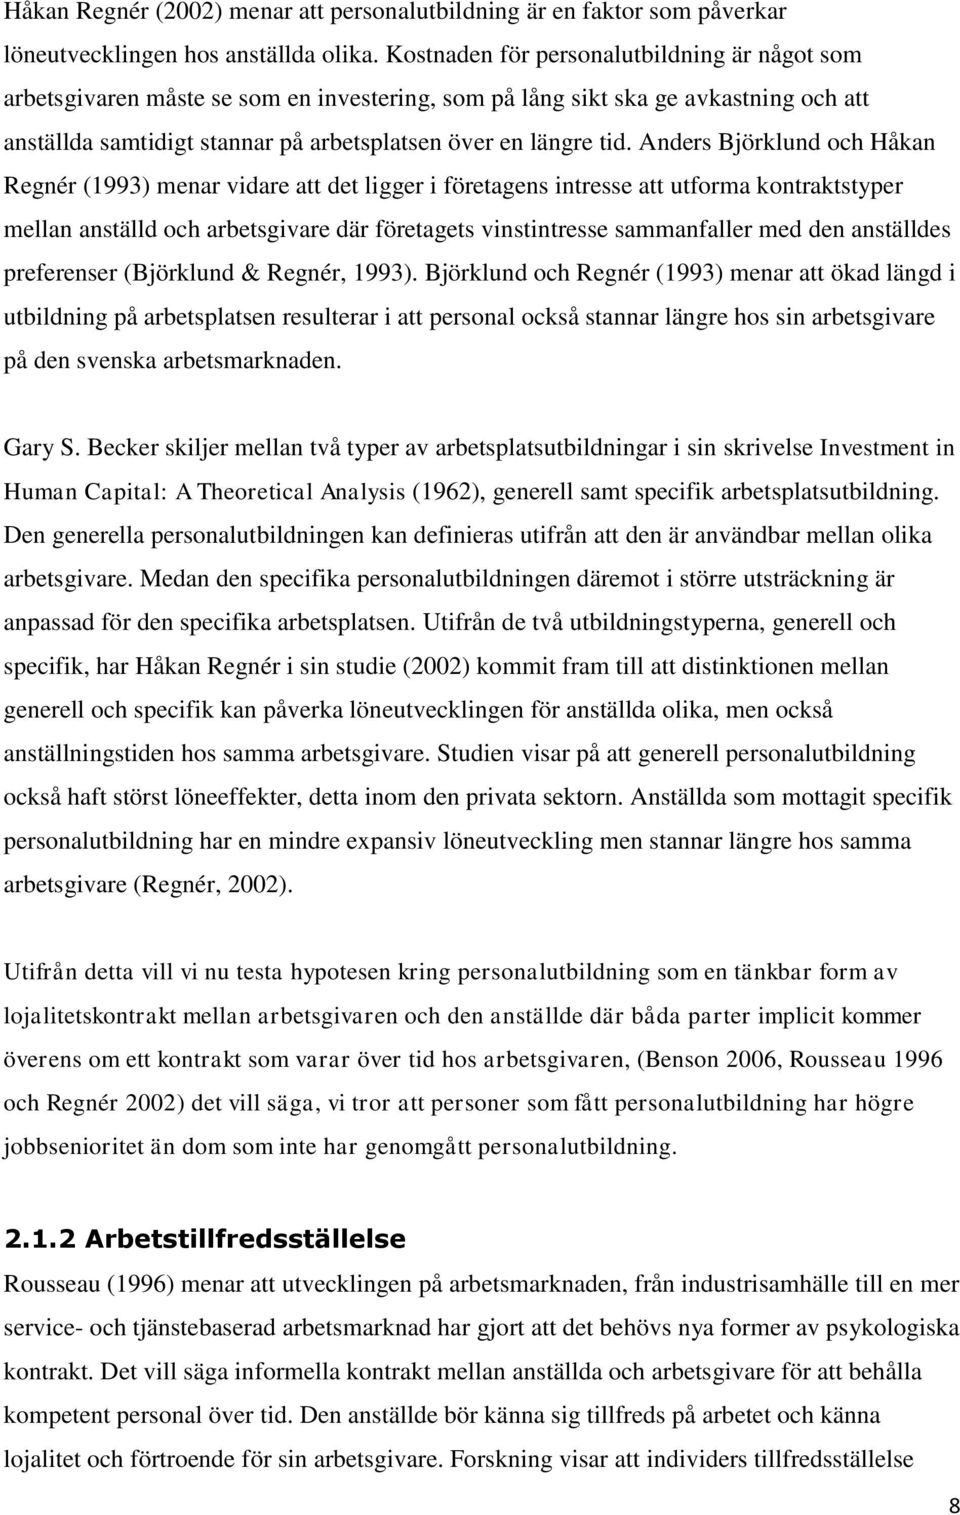 Anders Björklund och Håkan Regnér (1993) menar vidare att det ligger i företagens intresse att utforma kontraktstyper mellan anställd och arbetsgivare där företagets vinstintresse sammanfaller med